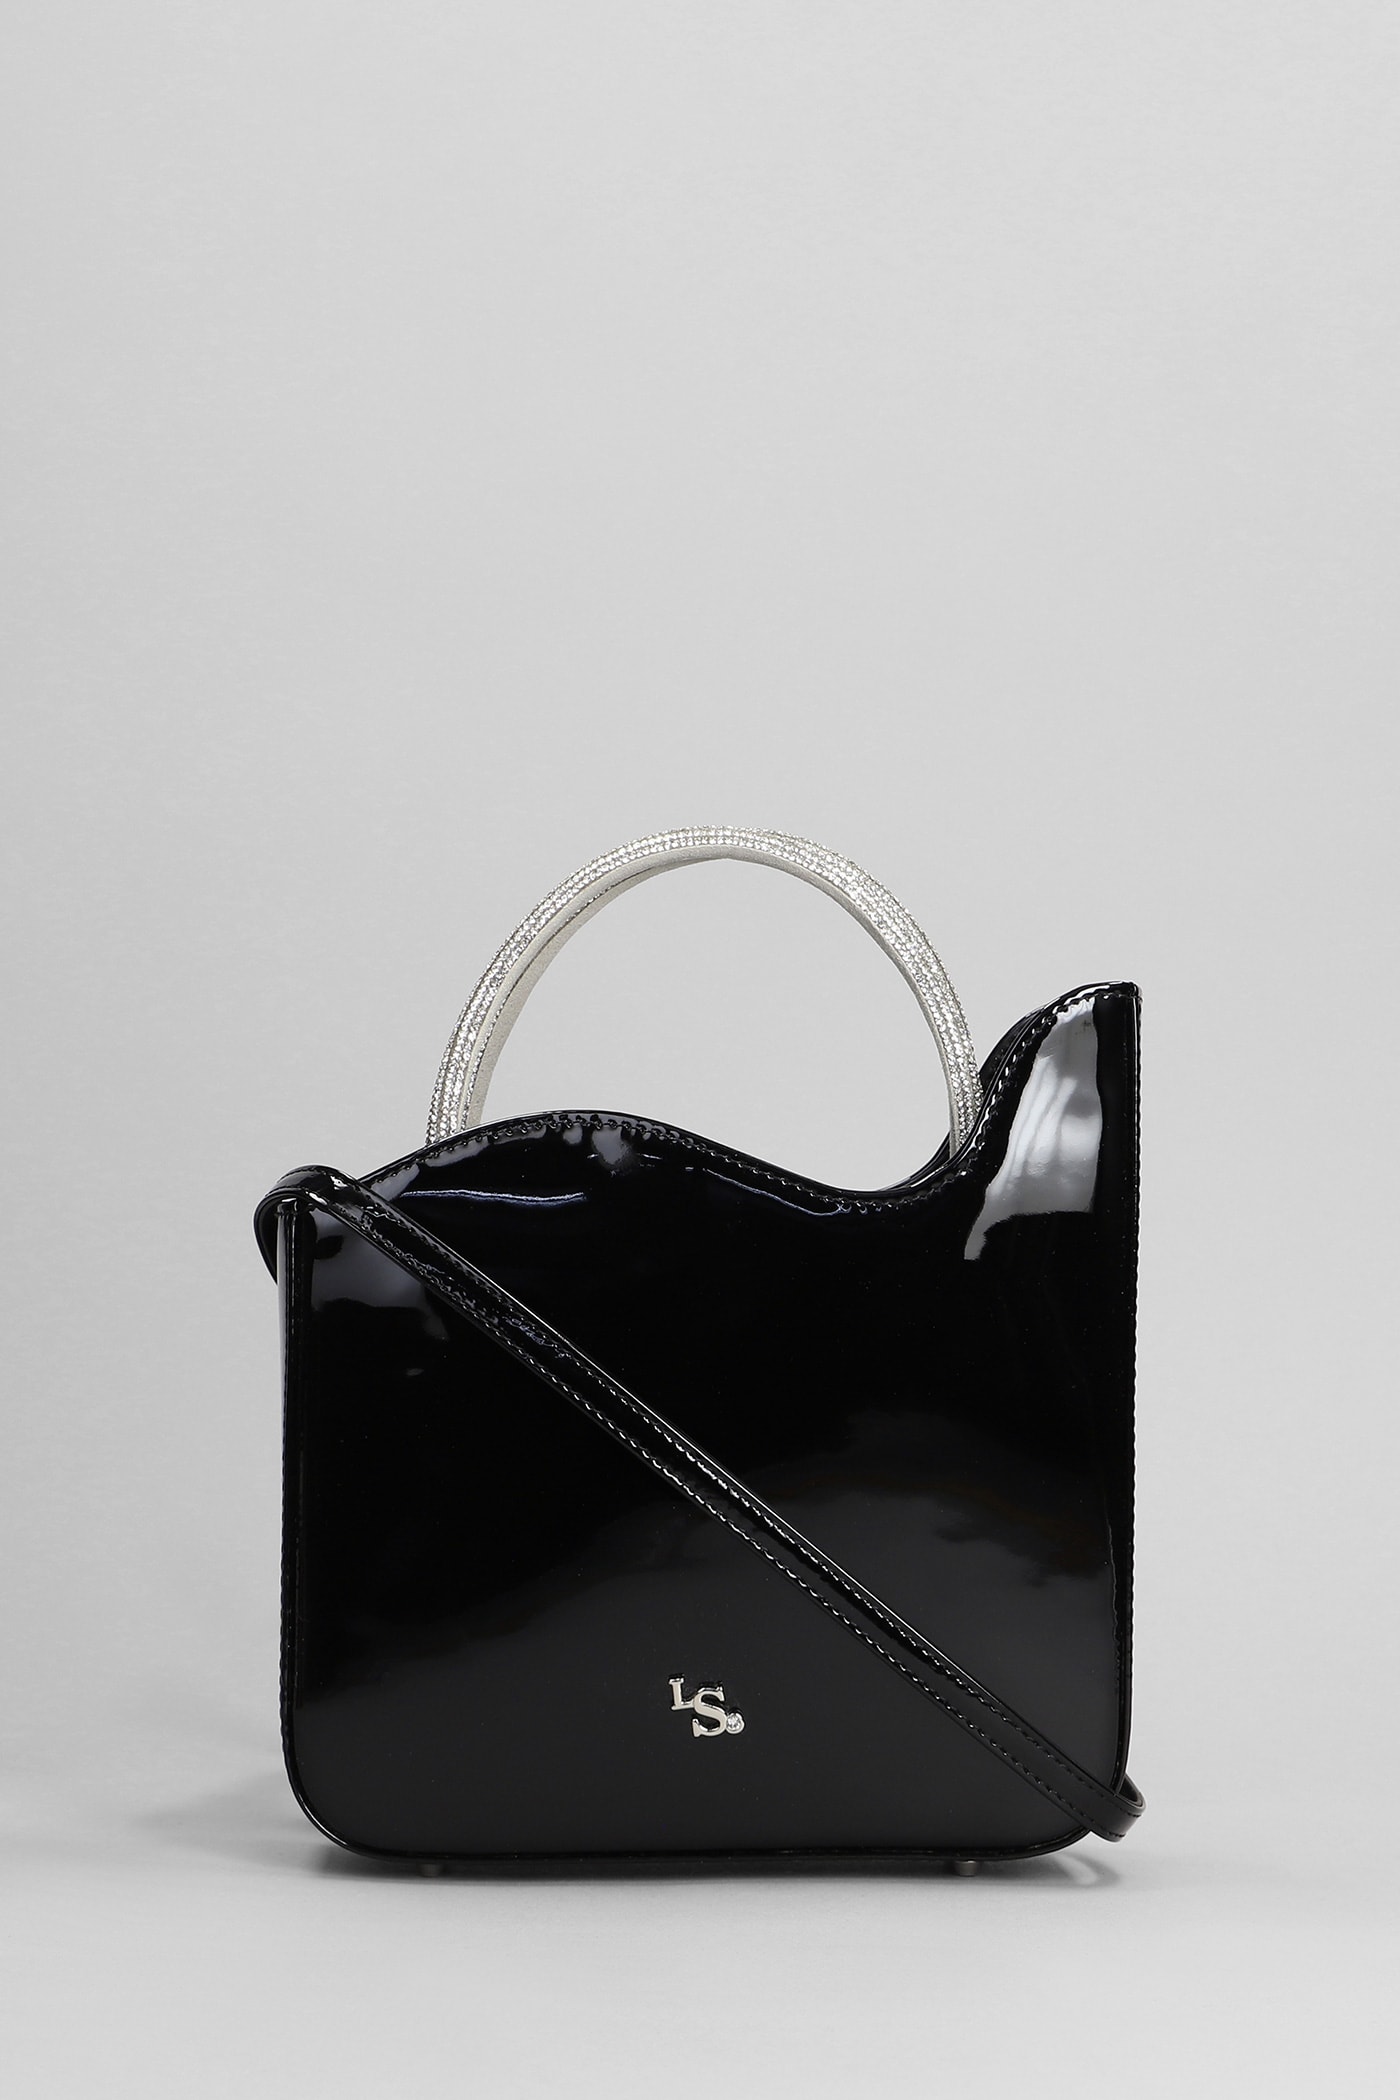 Ivy Shoulder Bag In Black Patent Leather